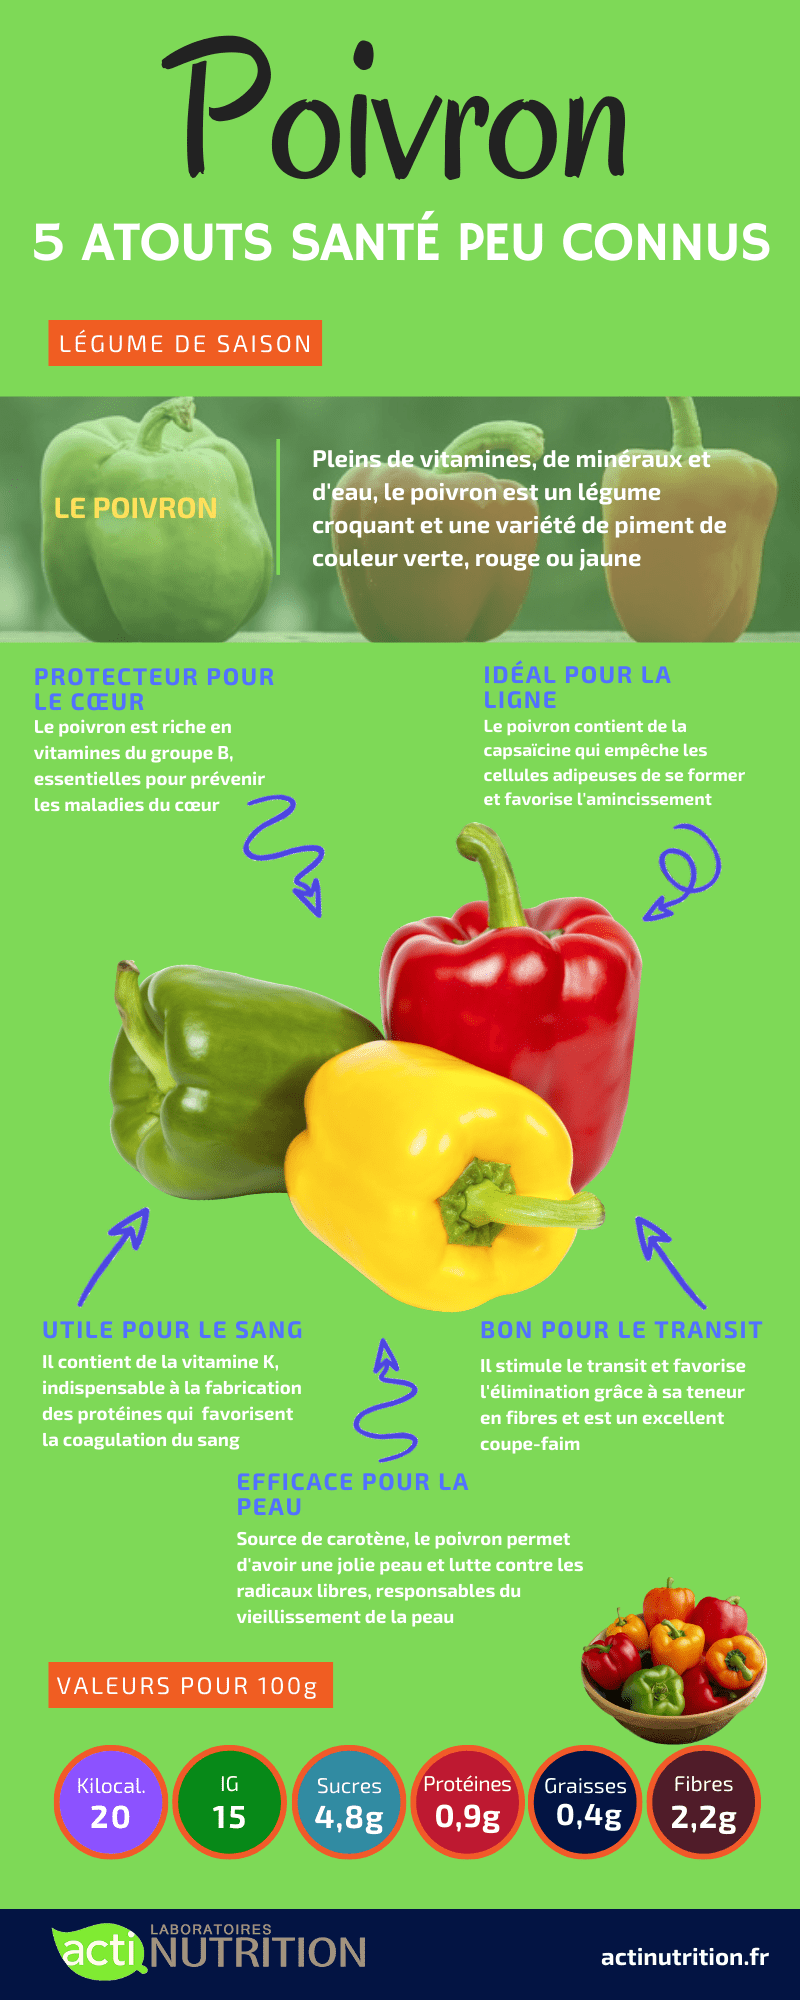 Comment classe-t-on les fruits et légumes par famille ? Actinutrition